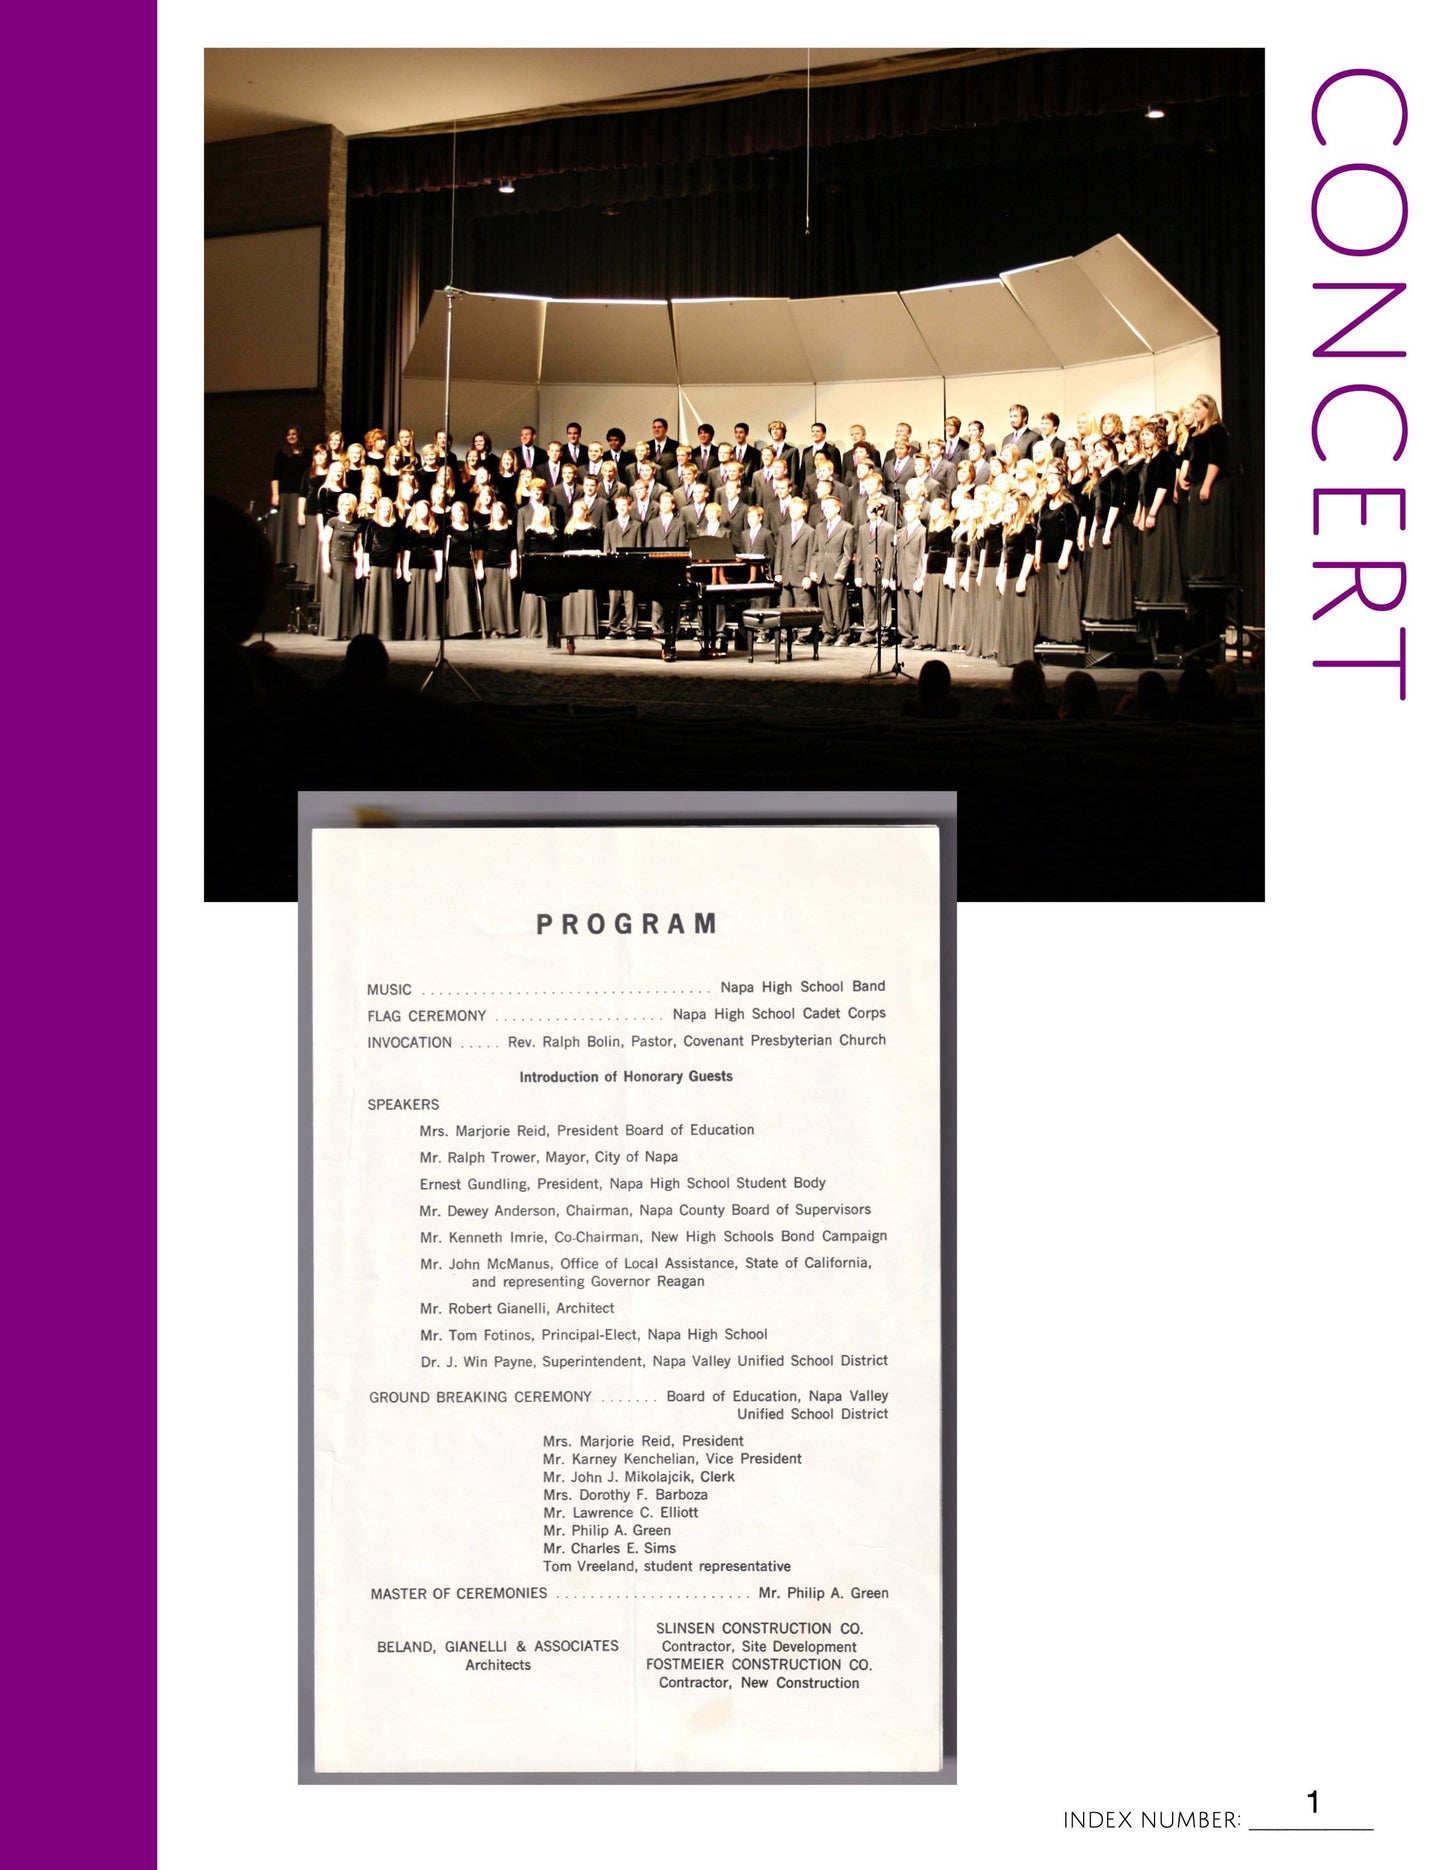 Concert: Printable Genealogy Form (Digital Download)